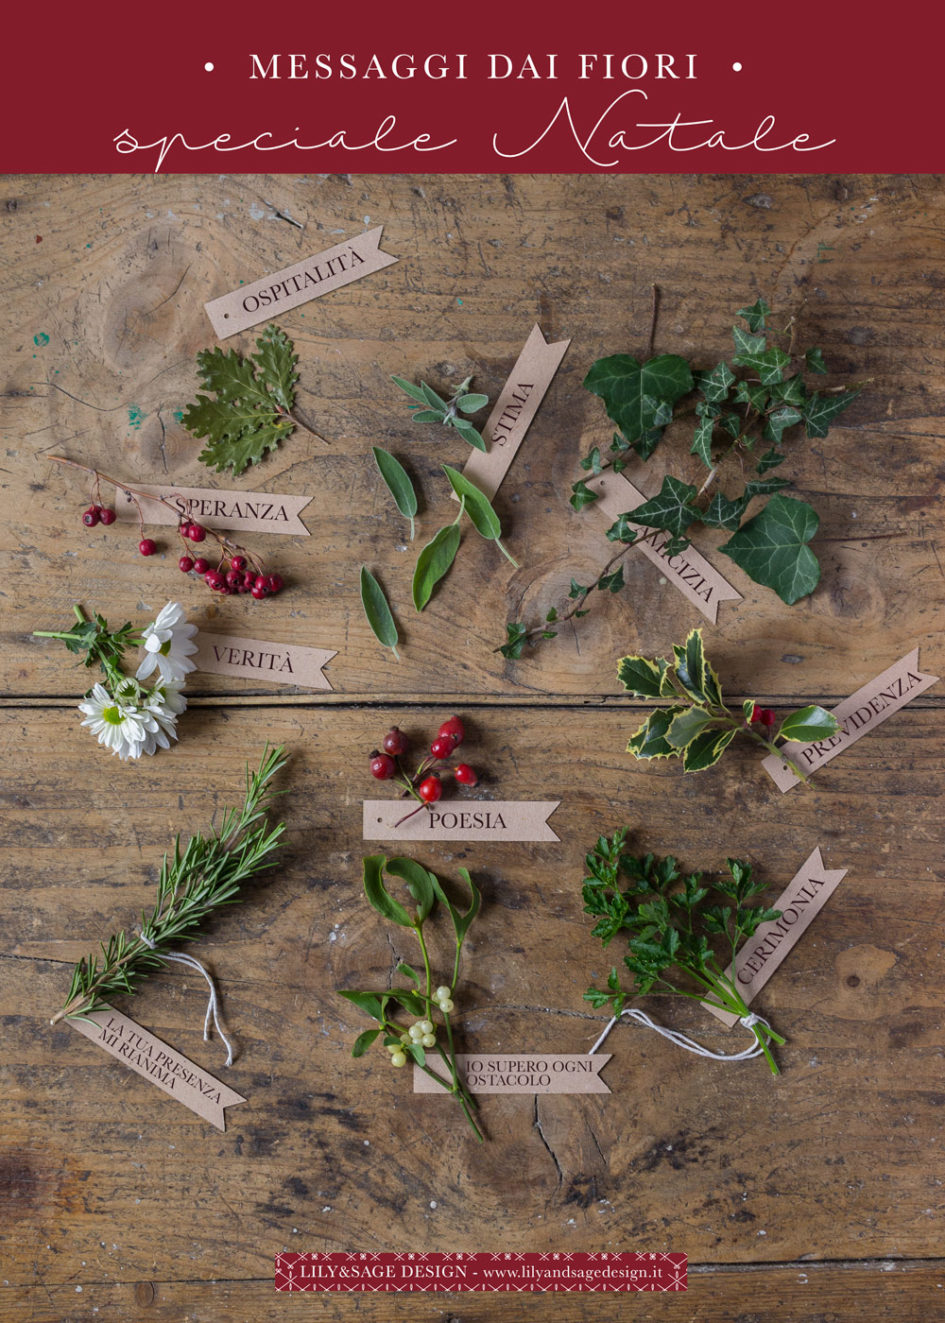 Linguaggio dei fiori - Speciale Natale: Agrifoglio, vischio, edera, rosa canina e molto altro - Lily&Sage Design